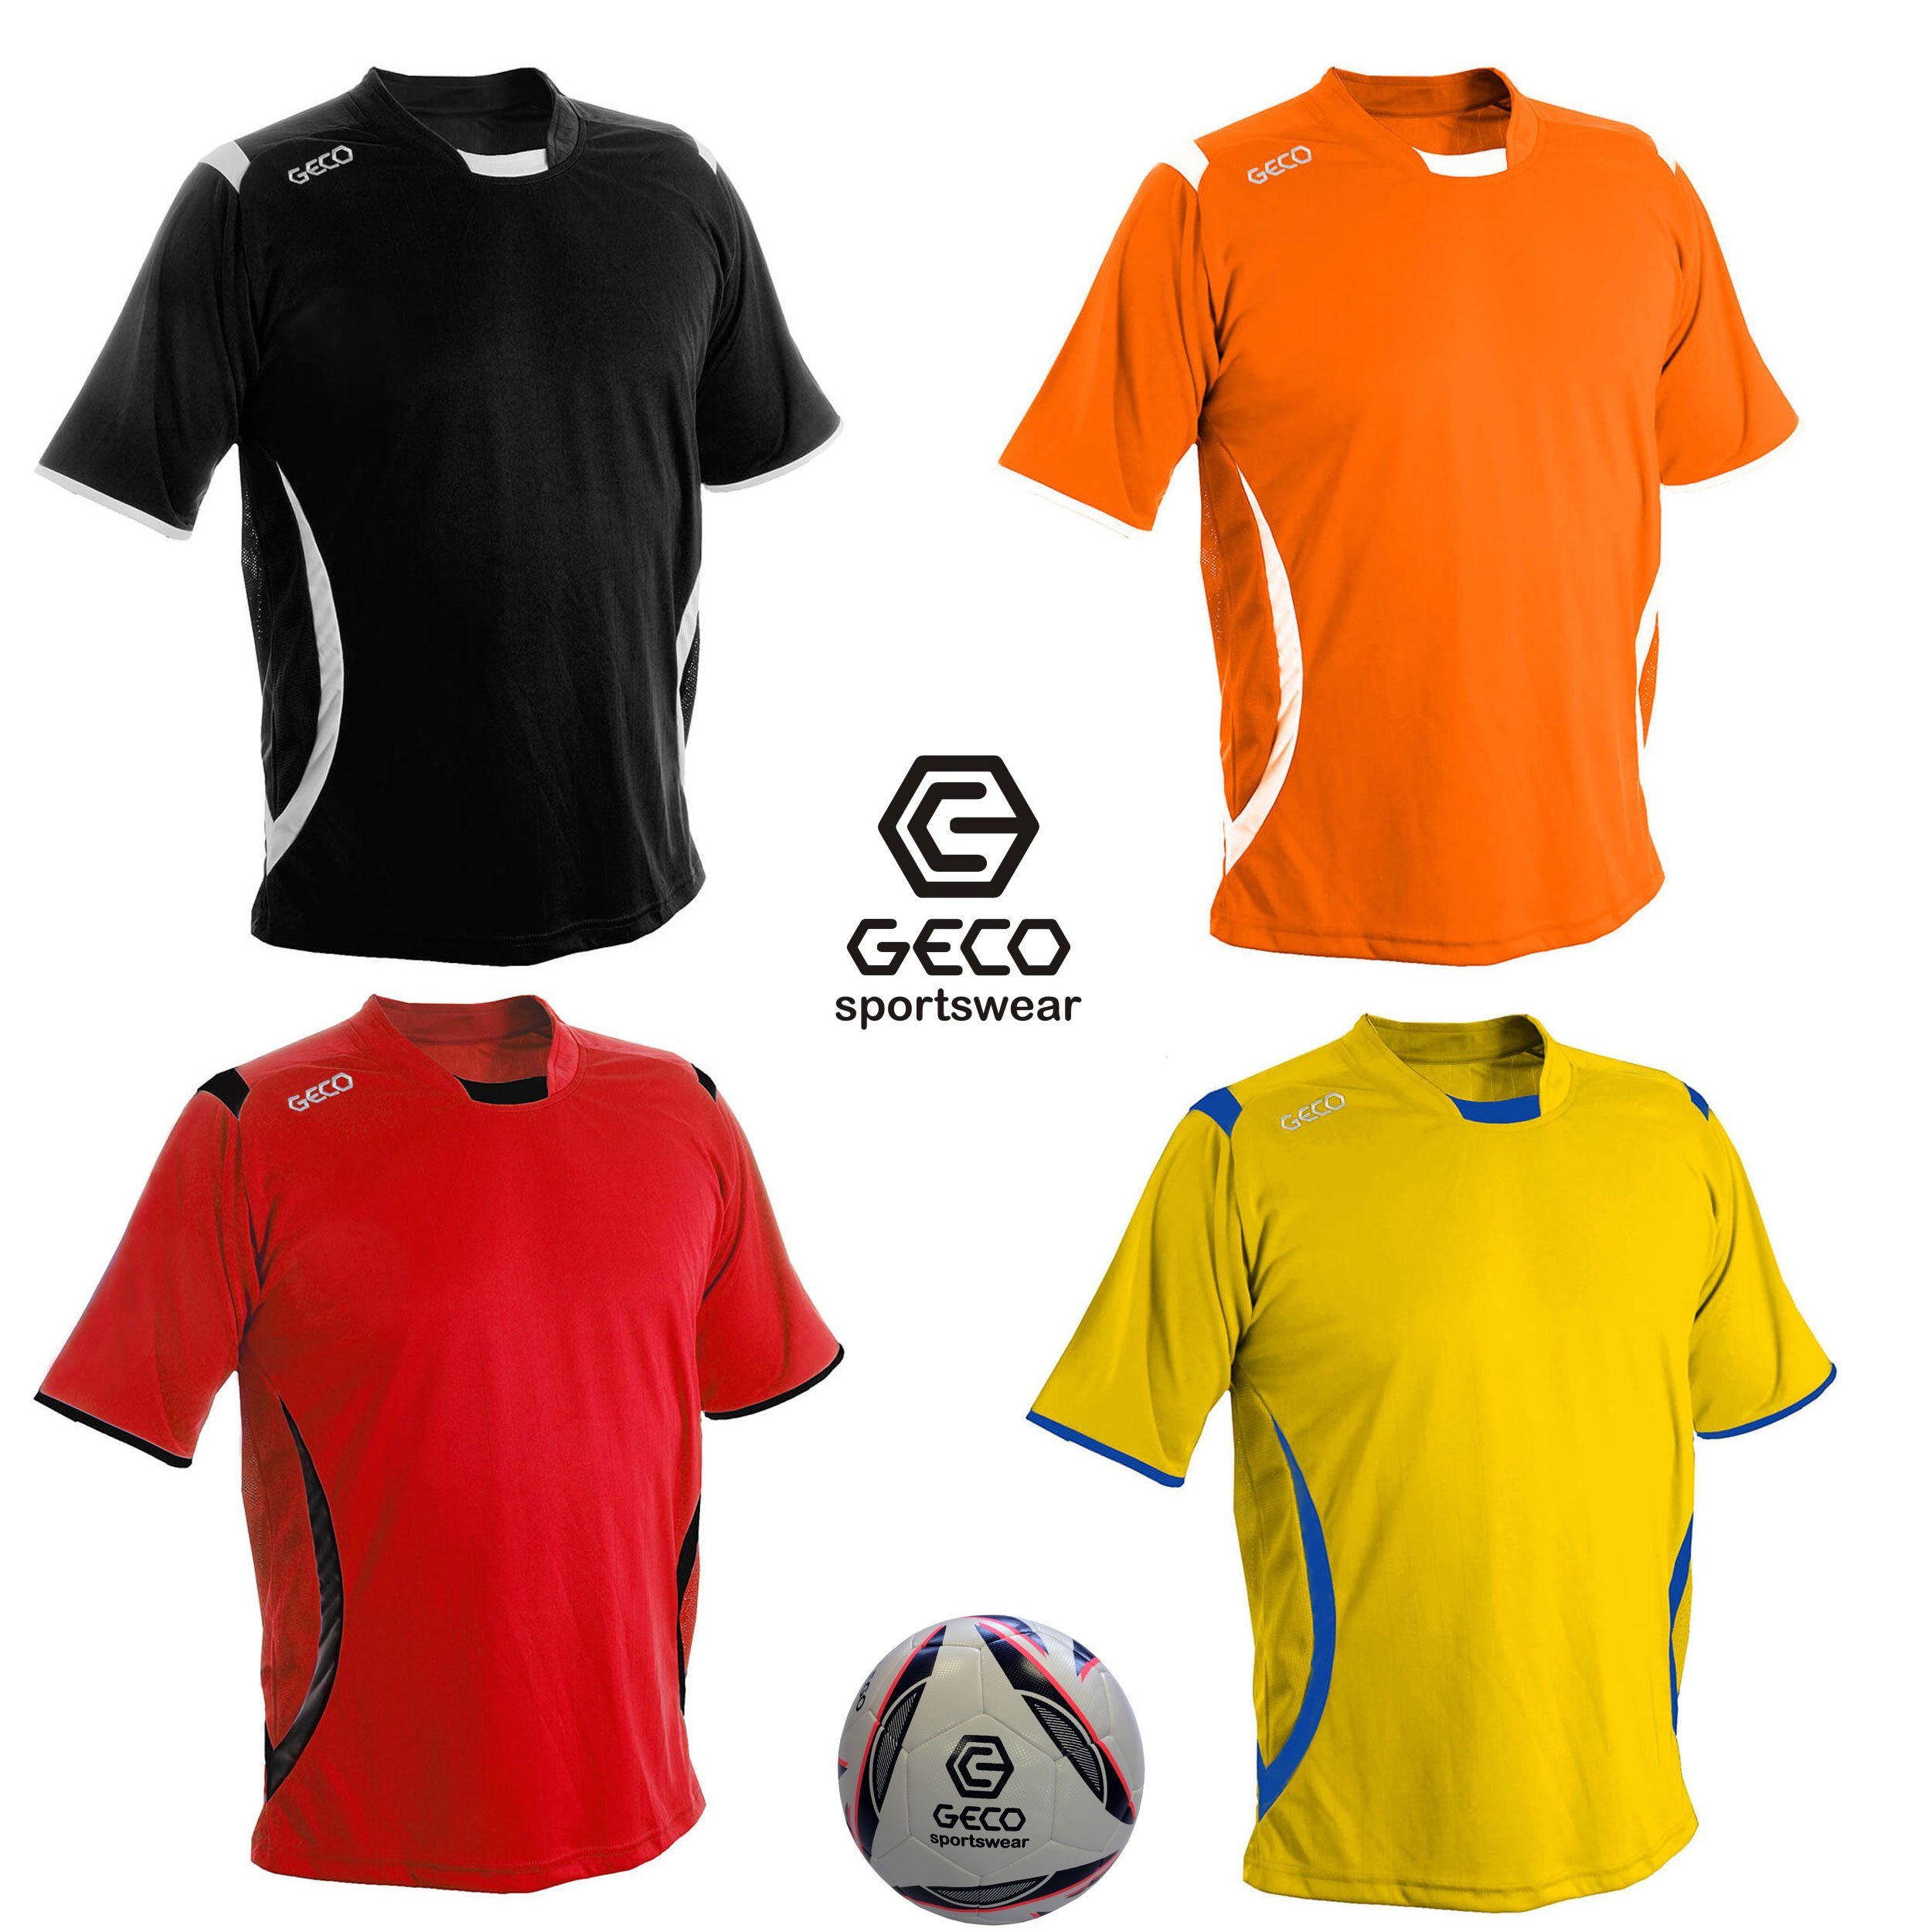 Levante zweifarbig gelb/blau Trikot kurzarm Fußball Fußballtrikot Fußballtrikot Geco Sportswear seitliche Mesheinsätze